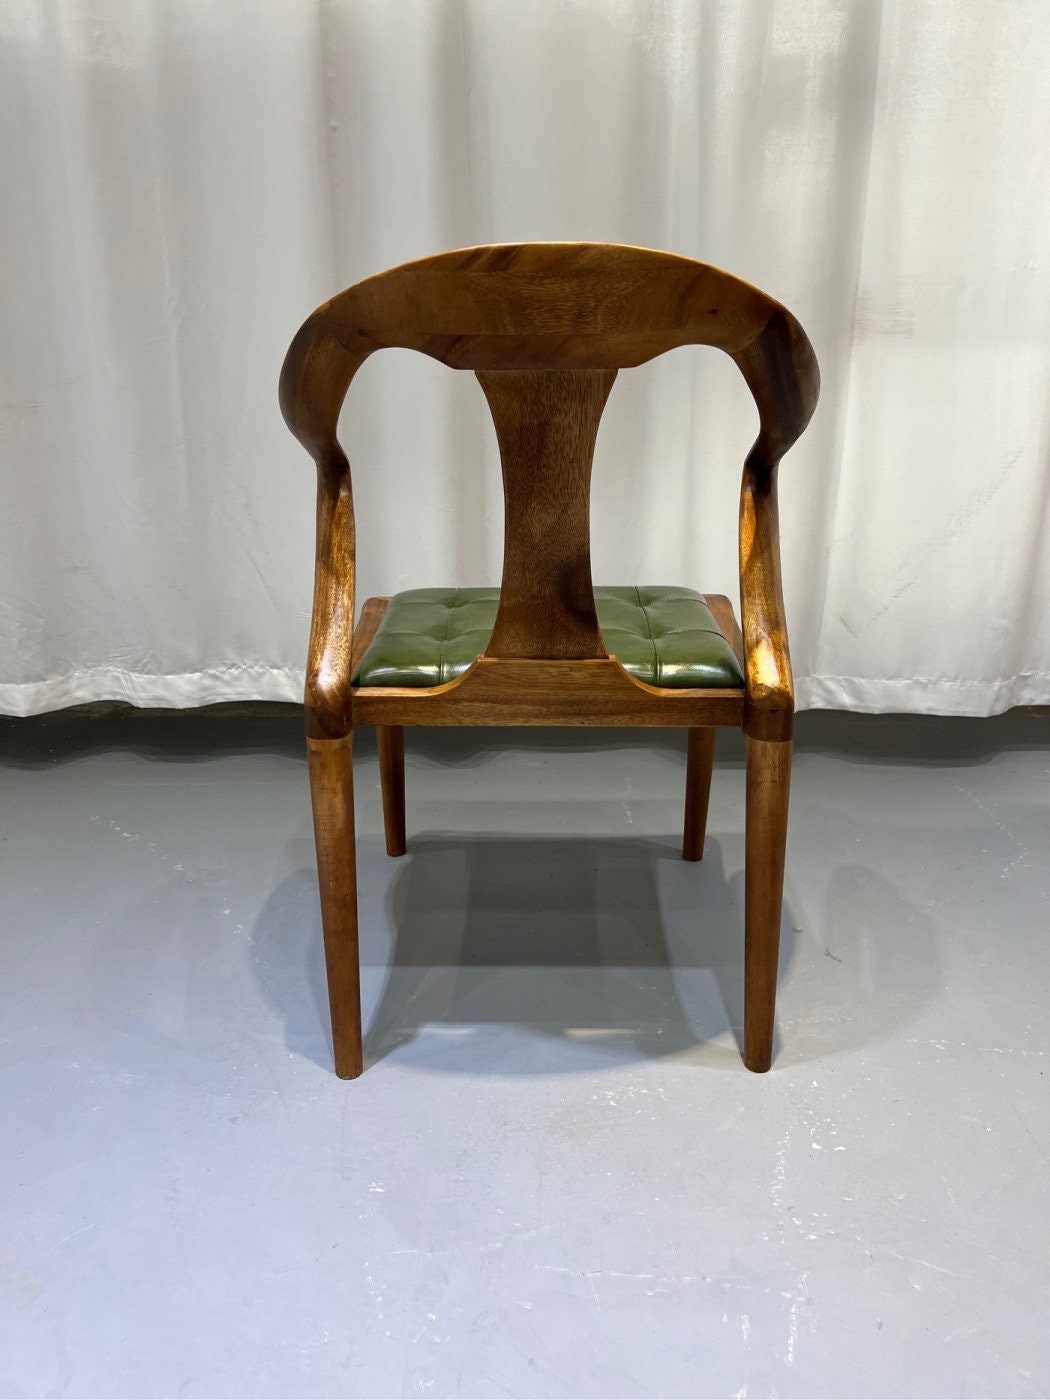 كرسي خشب، كرسي، كرسي جلد حديث منتصف القرن، كراسي جلدية، كرسي منتصف القرن